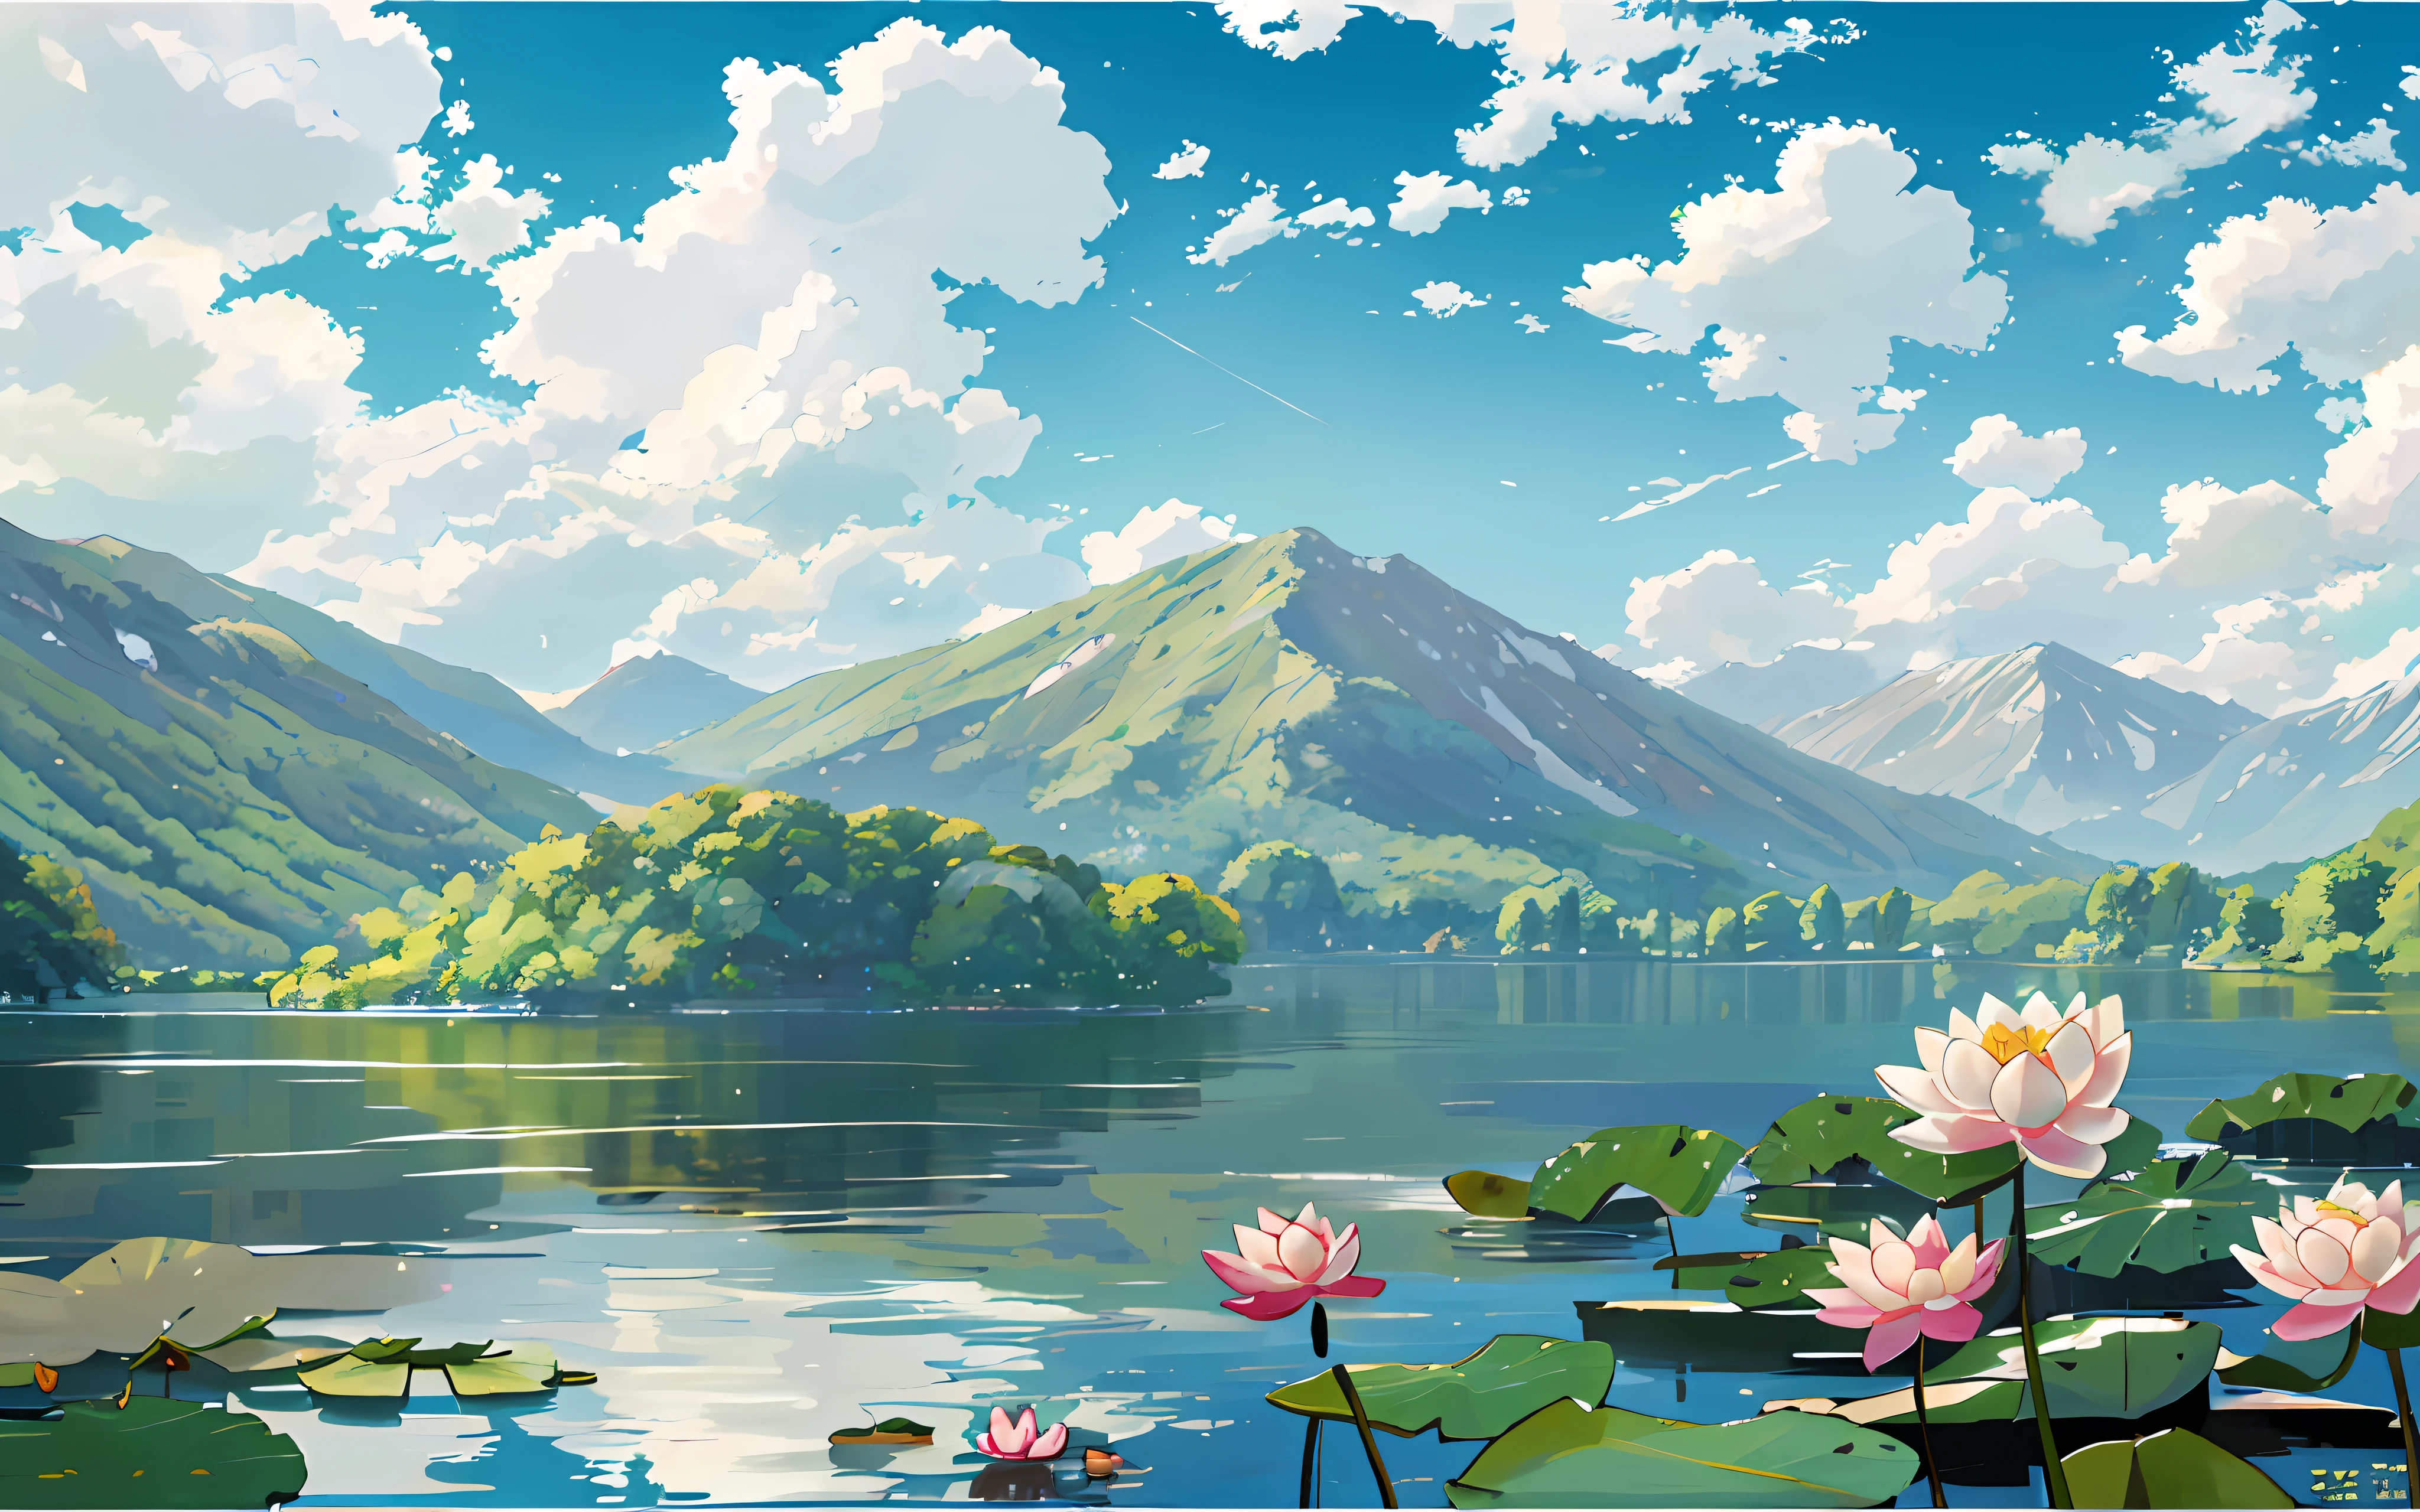 前景是一個湖, 有一個 [白色的] 湖中的睡蓮和荷葉, 绿色山脉, blue sky and 白色的 clouds, 吉普車風格, 二维, 賽璐珞, 插圖, 自然景觀, 風, 夏天, 明亮的色調, 陽光